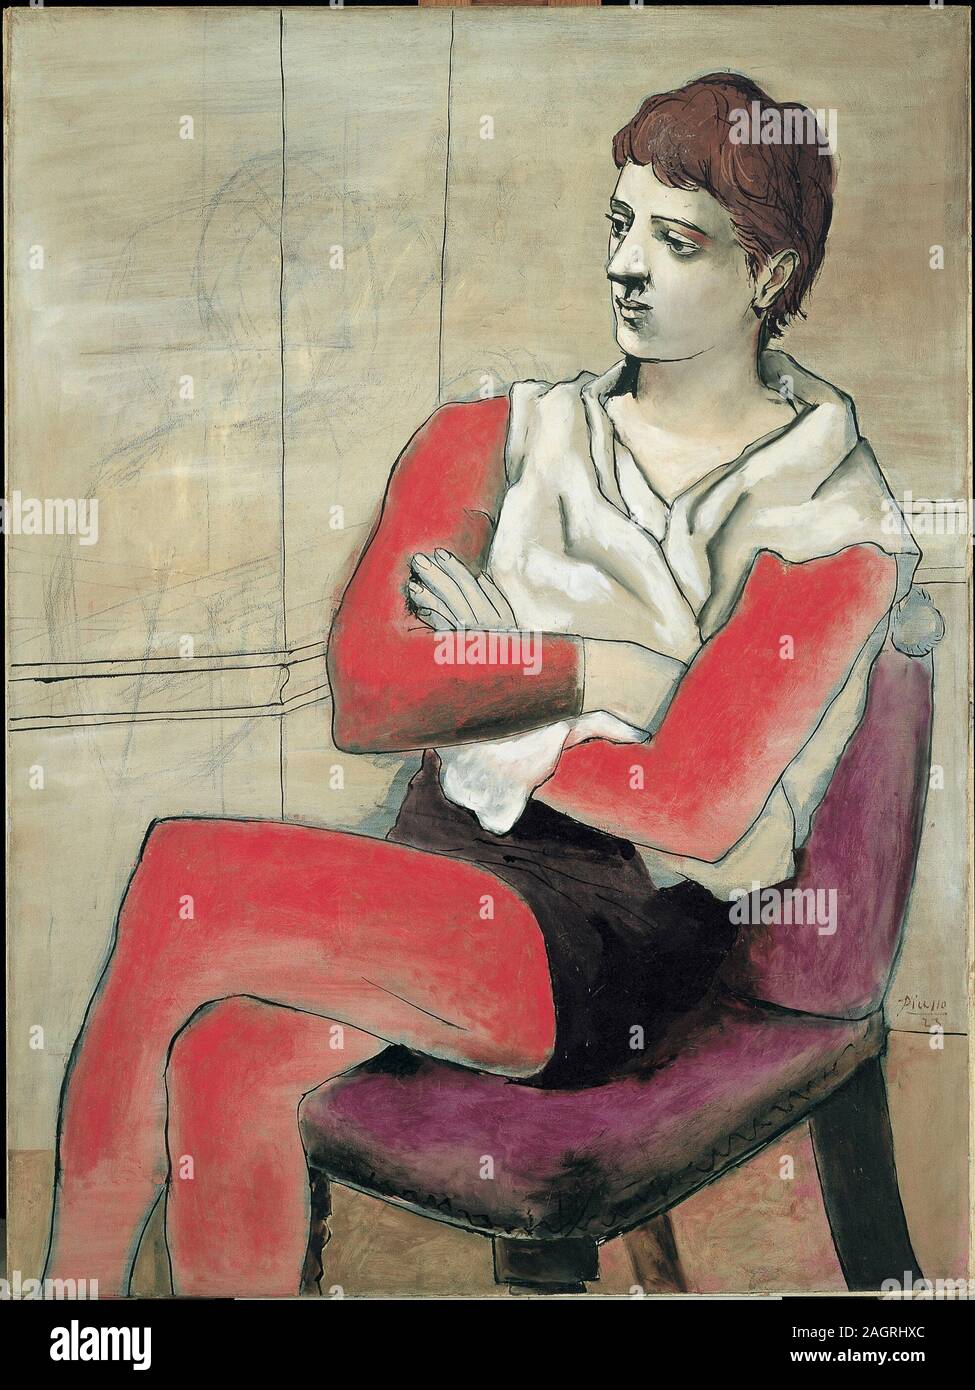 Saltimbanque assis, les bras croisés. Museum: Bridgestone Museum Of Art. Author: PABLO PICASSO. Stock Photo